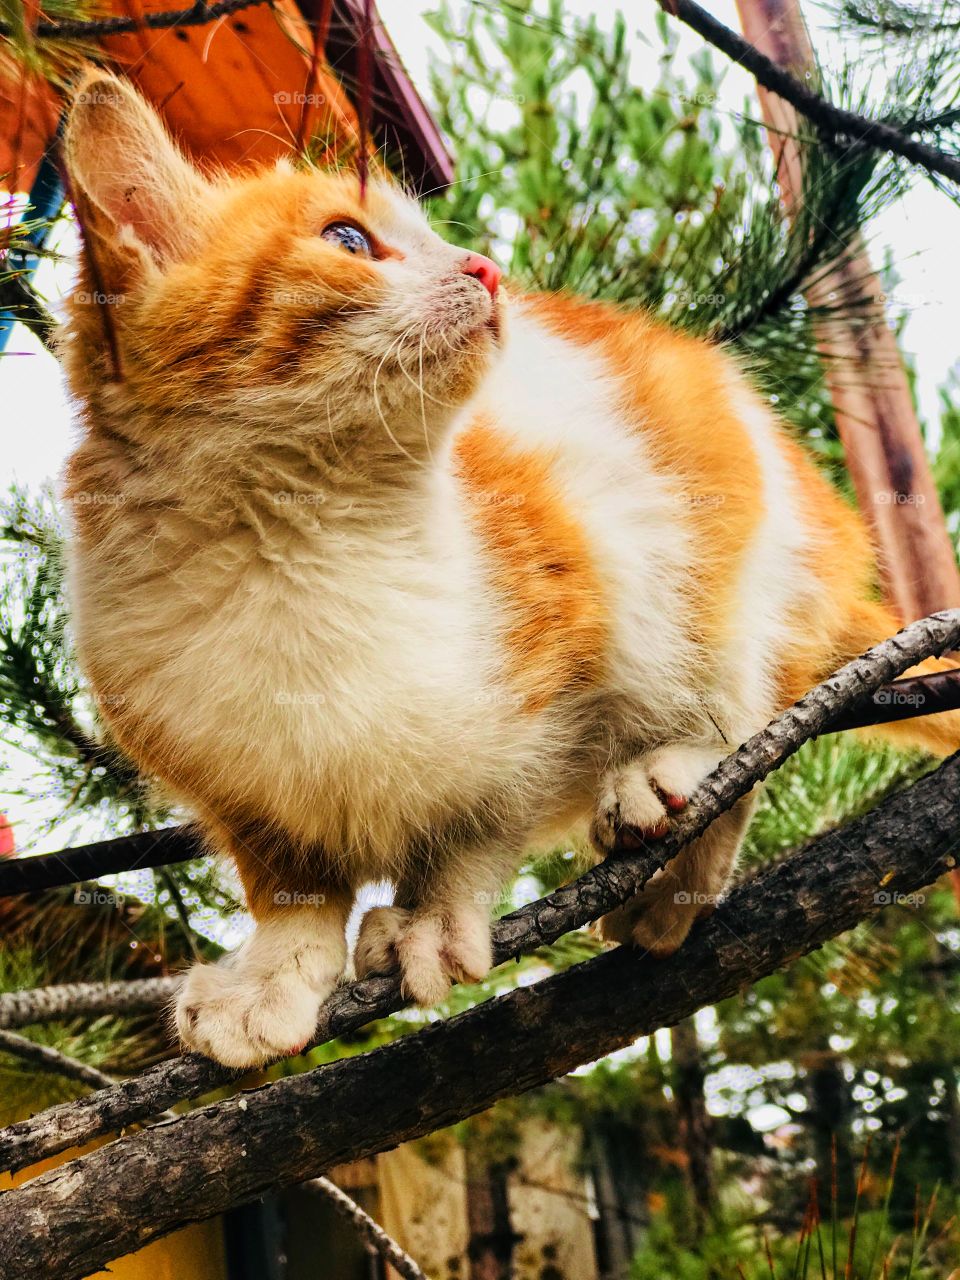 little kitty on the tree